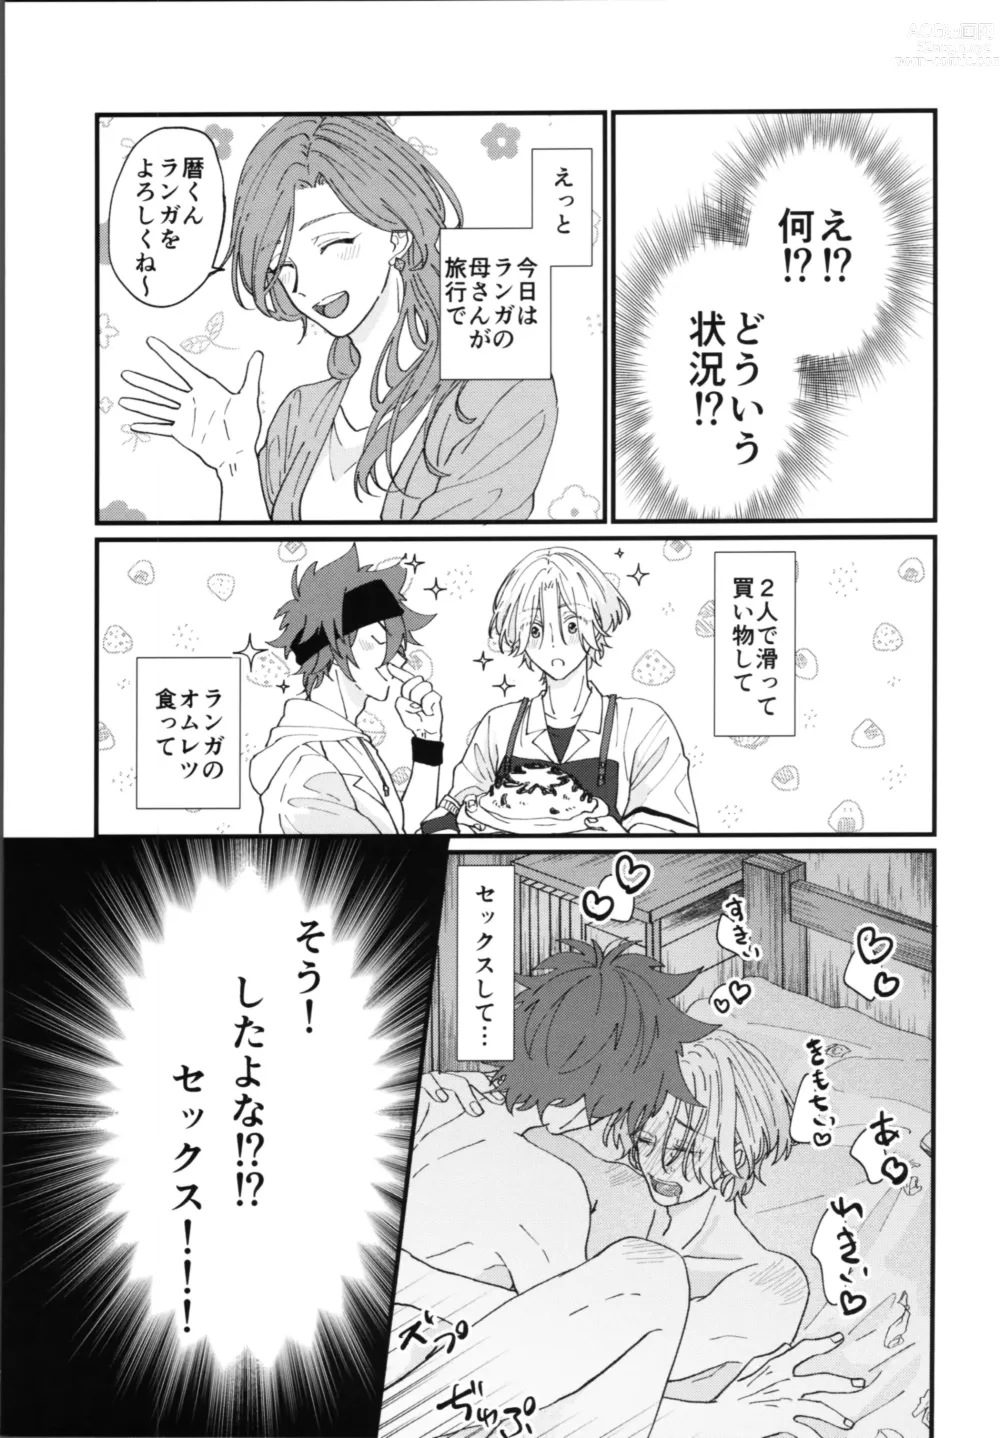 Page 4 of doujinshi Kimi de toka shite